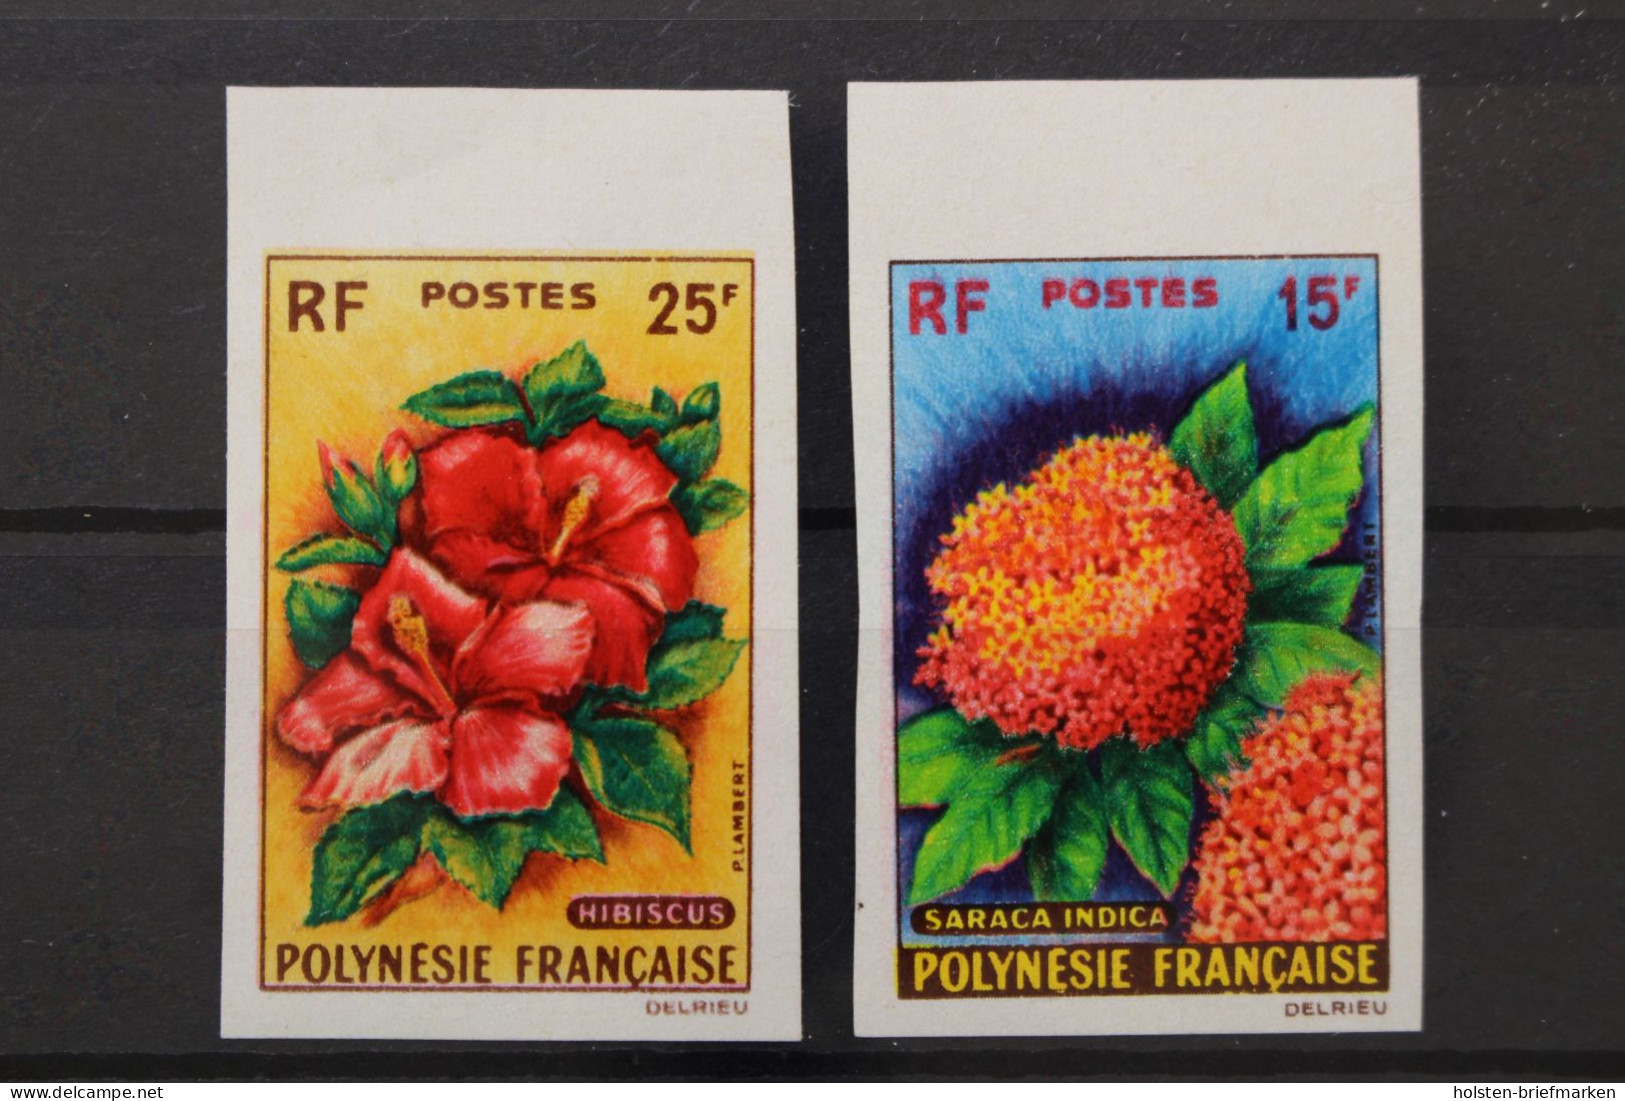 Französisch-Polynesien, MiNr. 20-21, Ungezähnt, Postfrisch - Unused Stamps